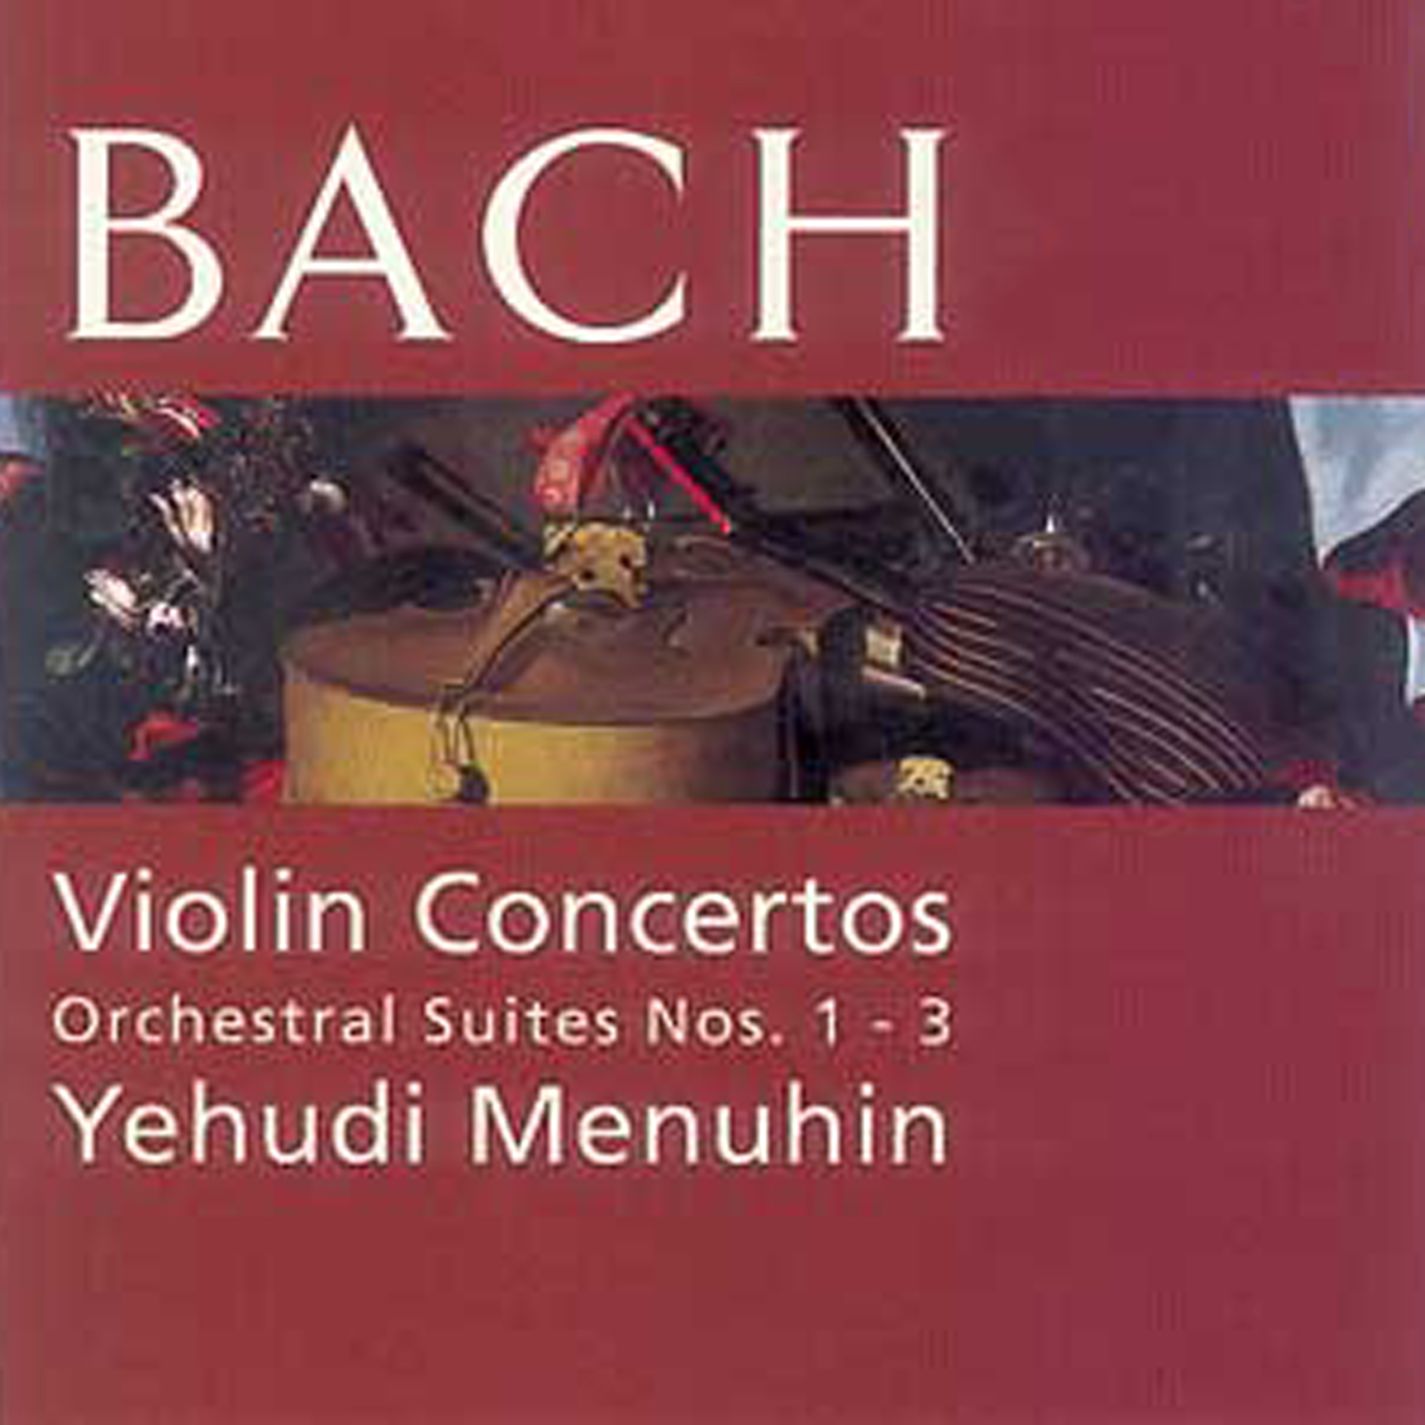 Violin Concertos/ Orchestral Suites - J S Bach